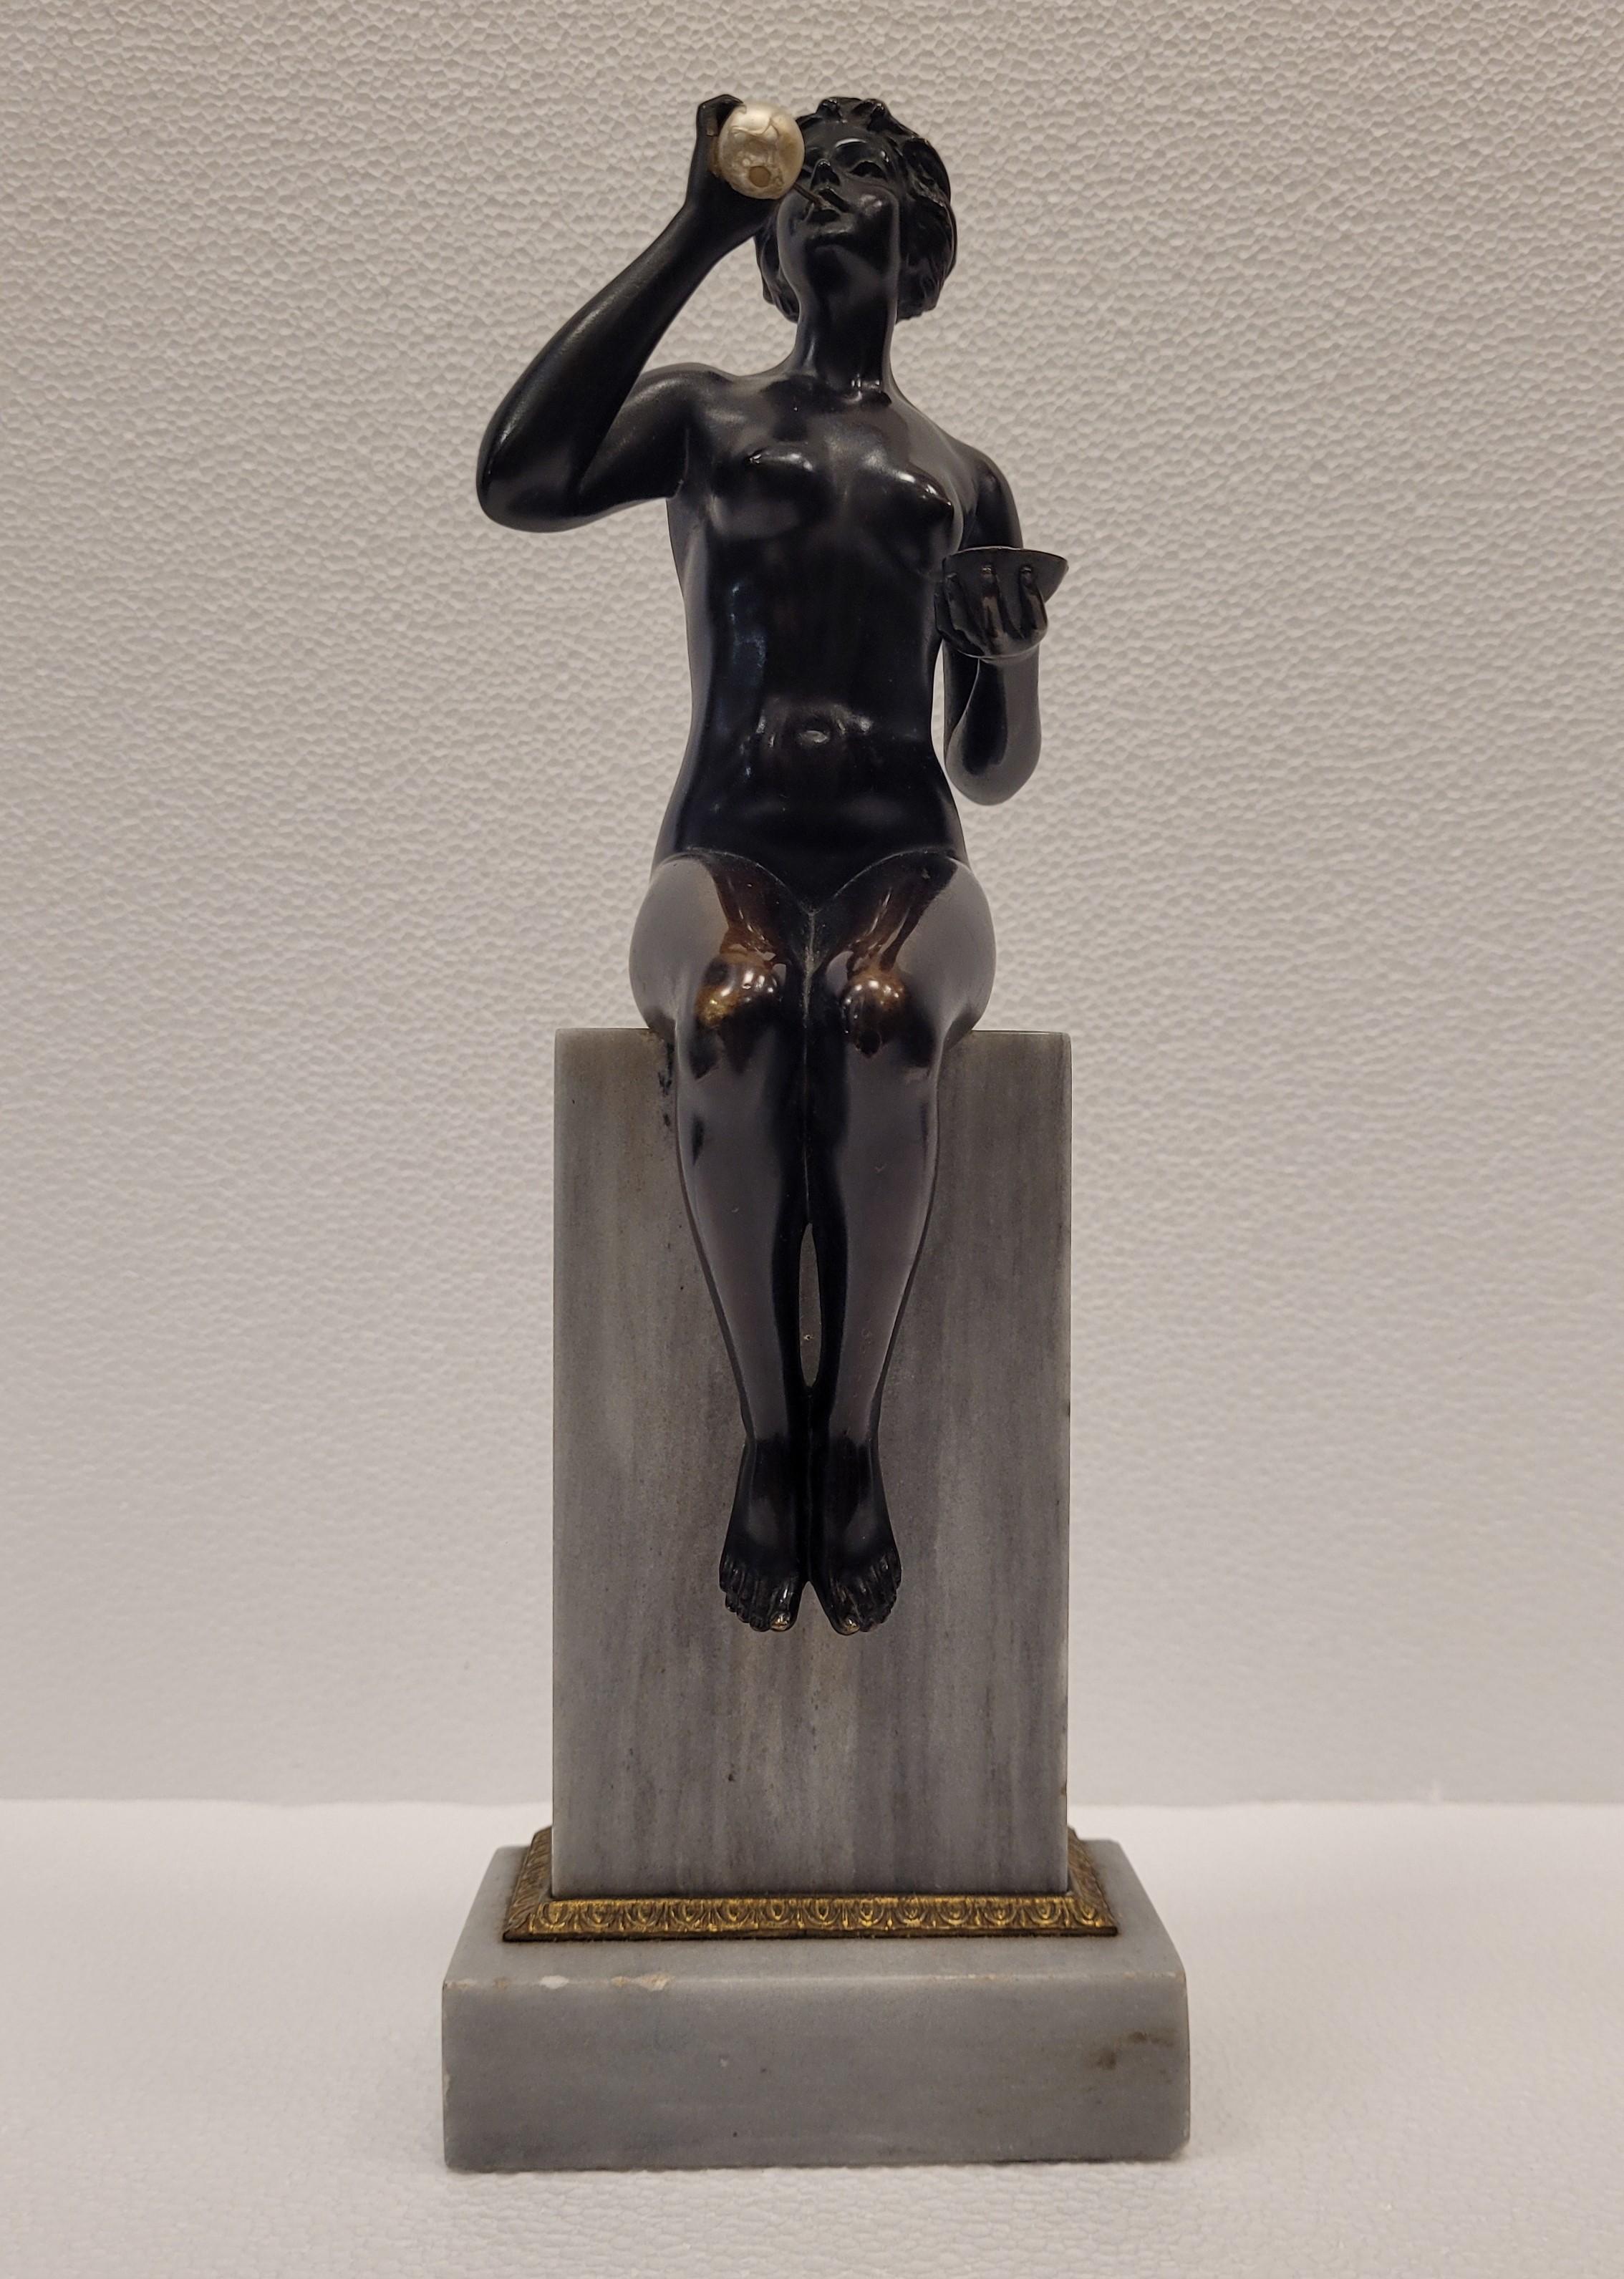 Escultura Art Nouveau alemana de bronce negro y mármol blanco, mujer soplando burbujas Hecho a mano en venta